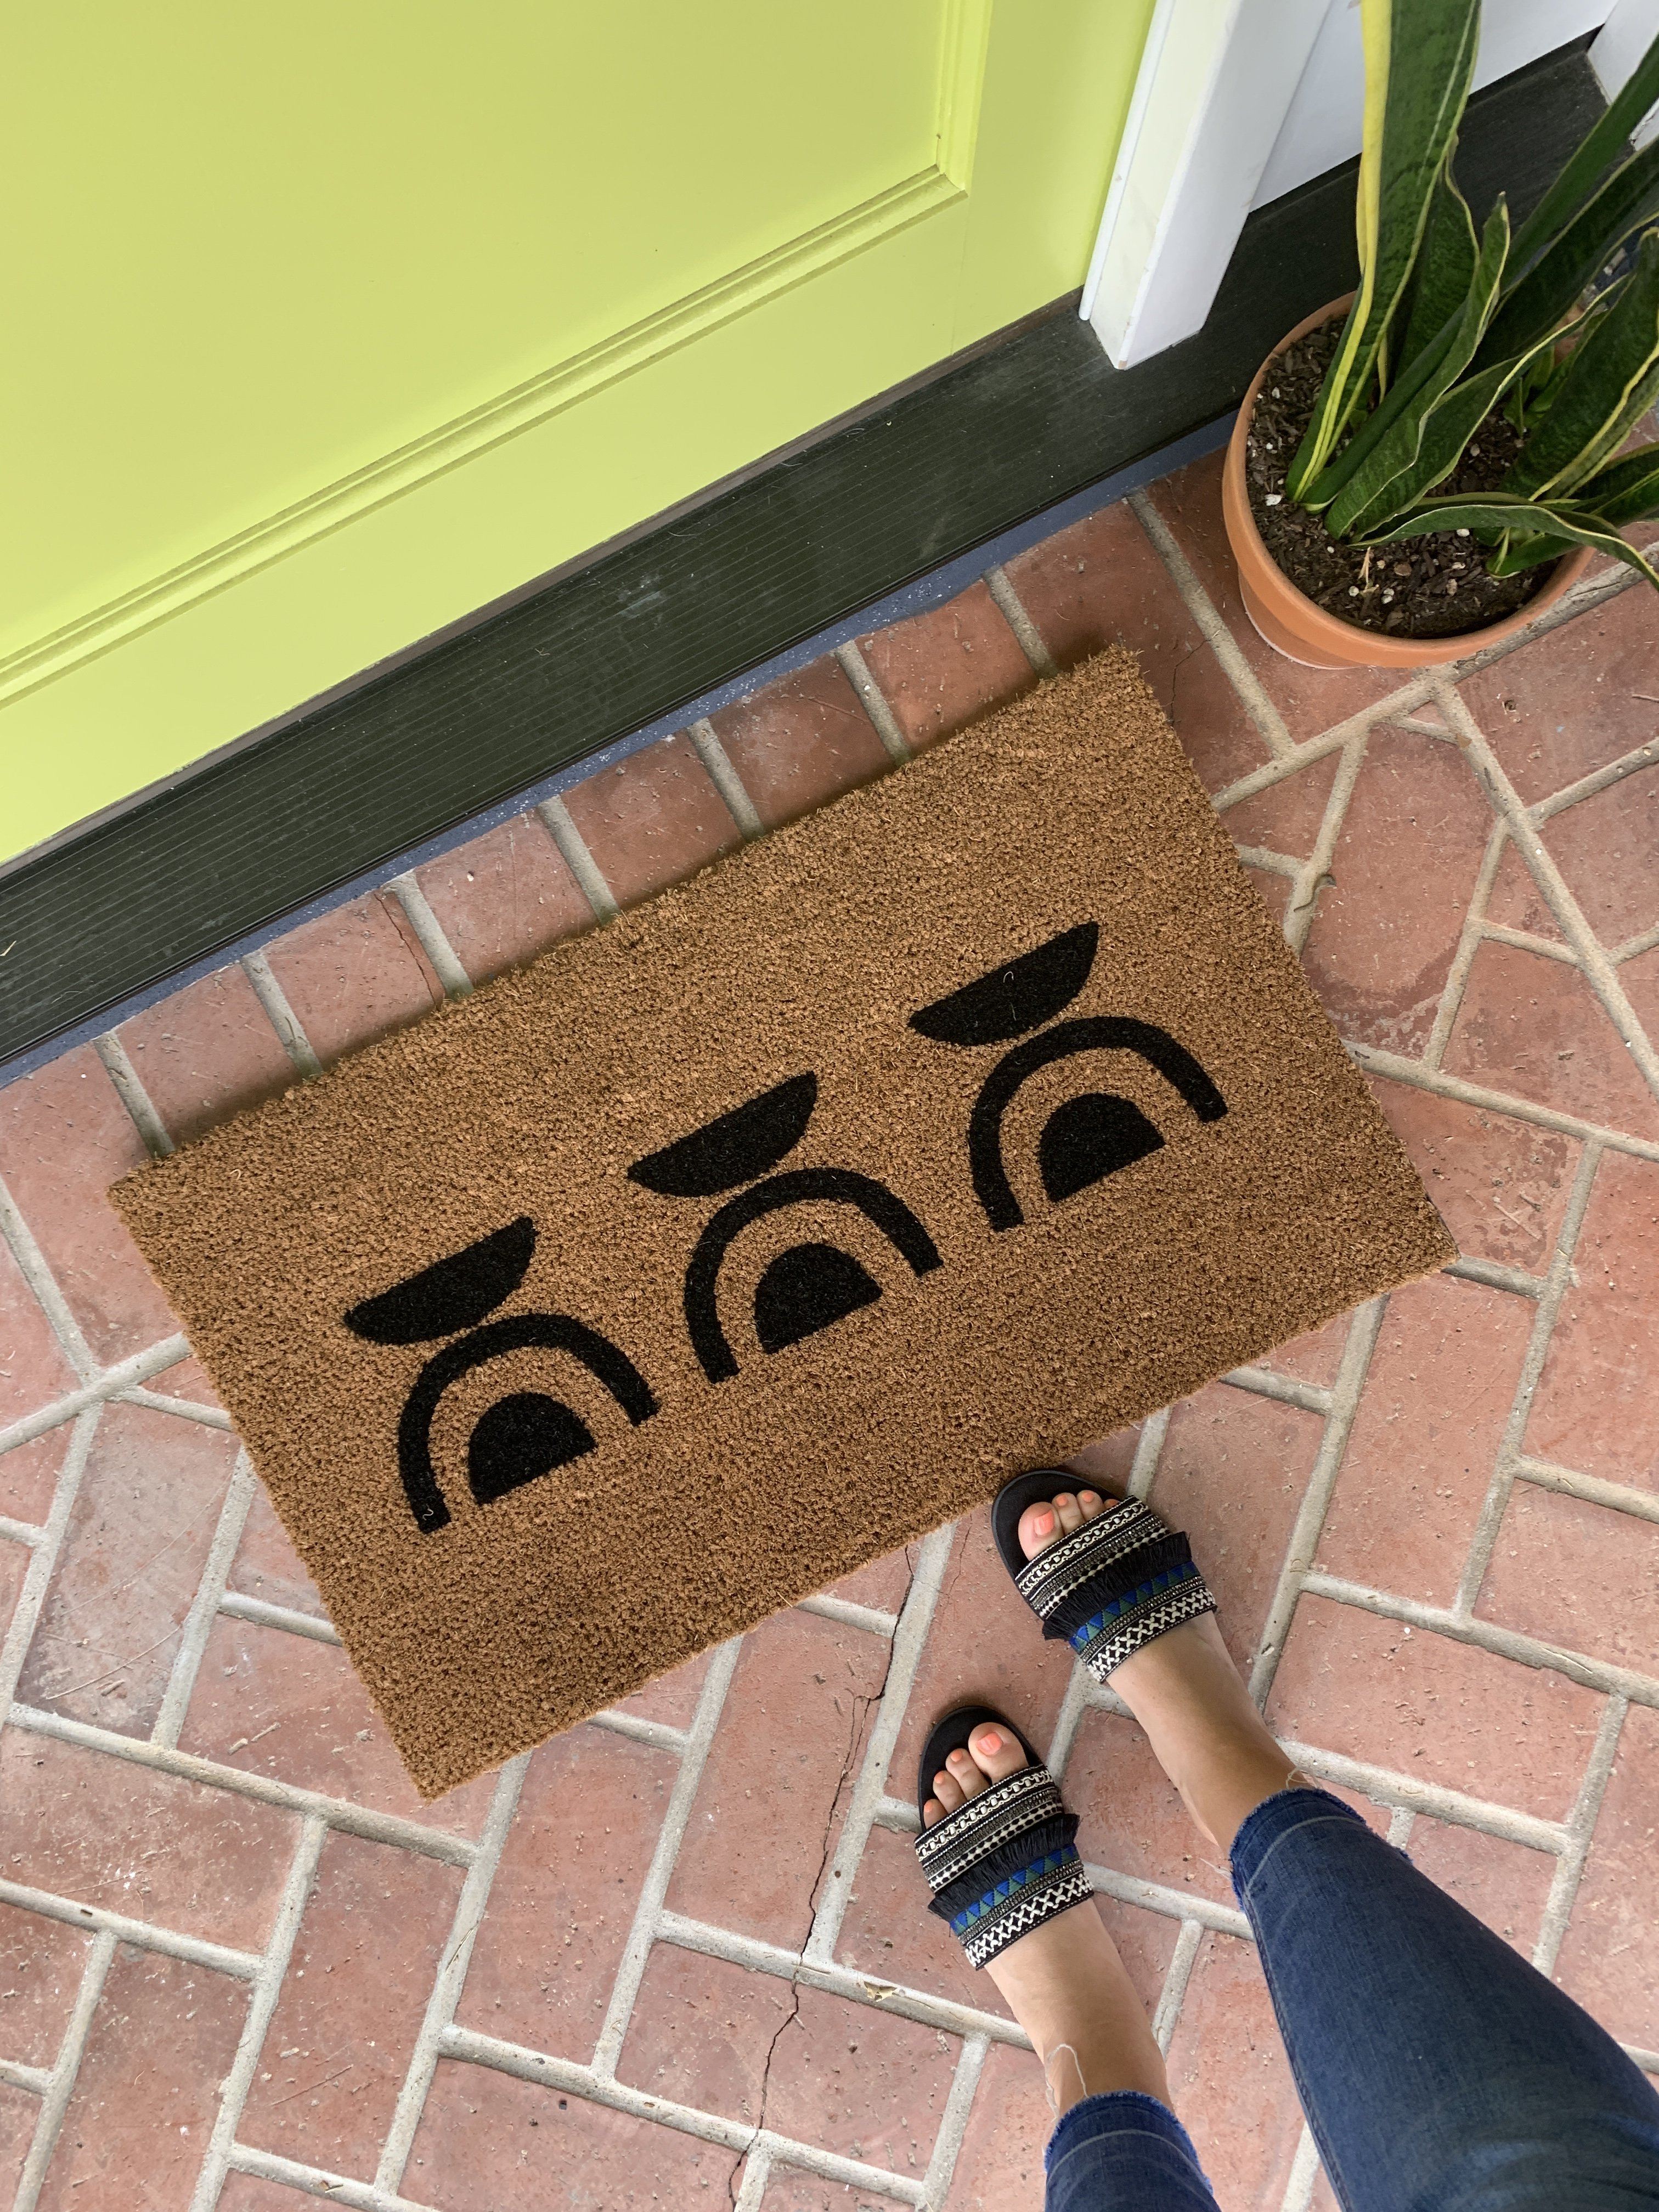 The Ellie Modern Outdoor Doormat